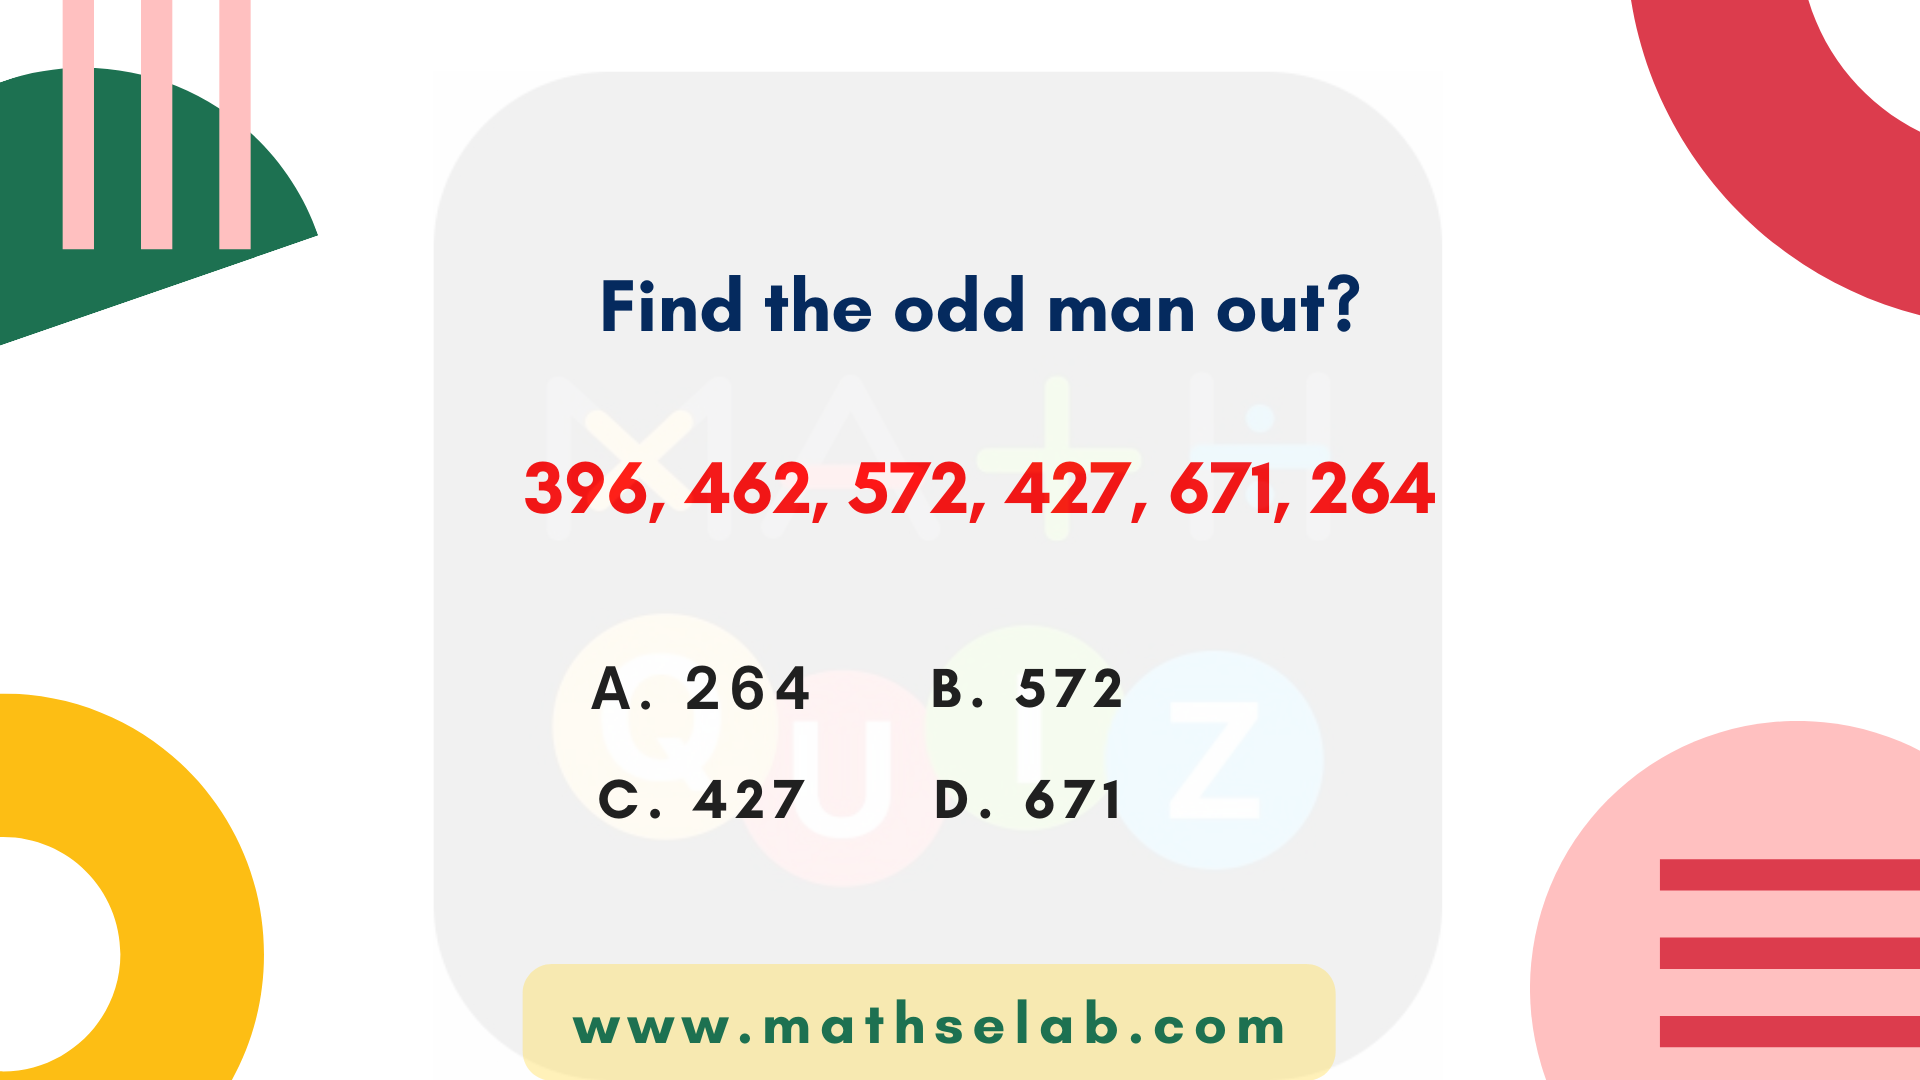 Find the odd man out 396, 462, 572, 427, 671, 264. - www.mathselab.com